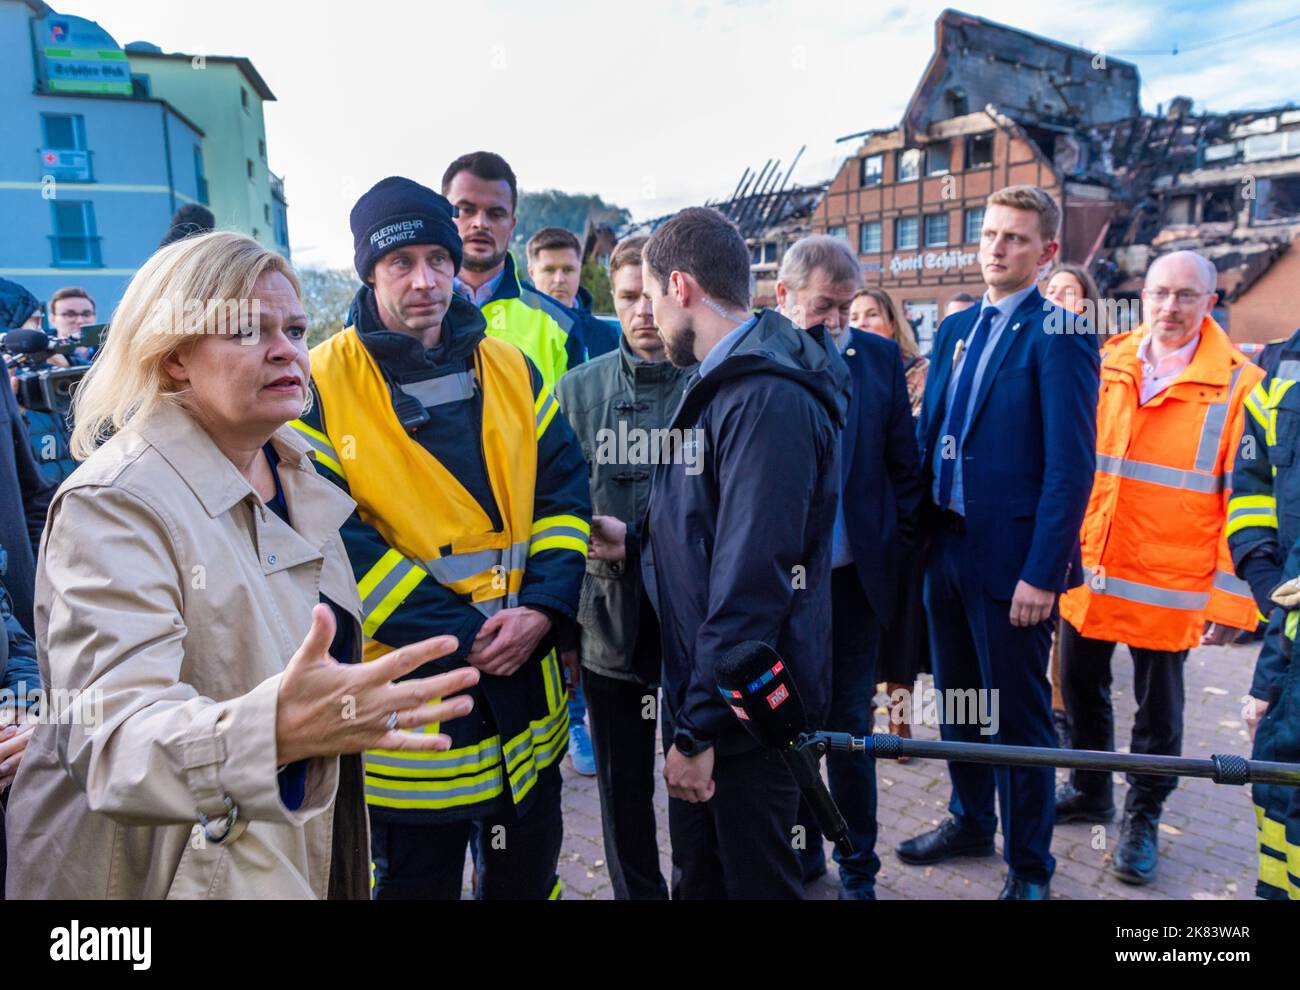 Allemagne. 20th octobre 2022. 20 octobre 2022, Mecklembourg-Poméranie occidentale, Groß Strömkendorf: Nancy Faeser (SPD), ministre fédérale de l'intérieur, parle devant l'hôtel brûlé avec des pompiers qui ont été impliqués dans les travaux de sauvetage. Le bâtiment, qui abritait des réfugiés d'Ukraine, a brûlé la nuit dernière. Personne n'a été blessé dans l'incendie, on soupçonne un incendie criminel. Les 14 résidents ont été logés dans d'autres appartements après les travaux de sauvetage. Photo: Jens Büttner/dpa crédit: dpa Picture Alliance/Alay Live News Banque D'Images